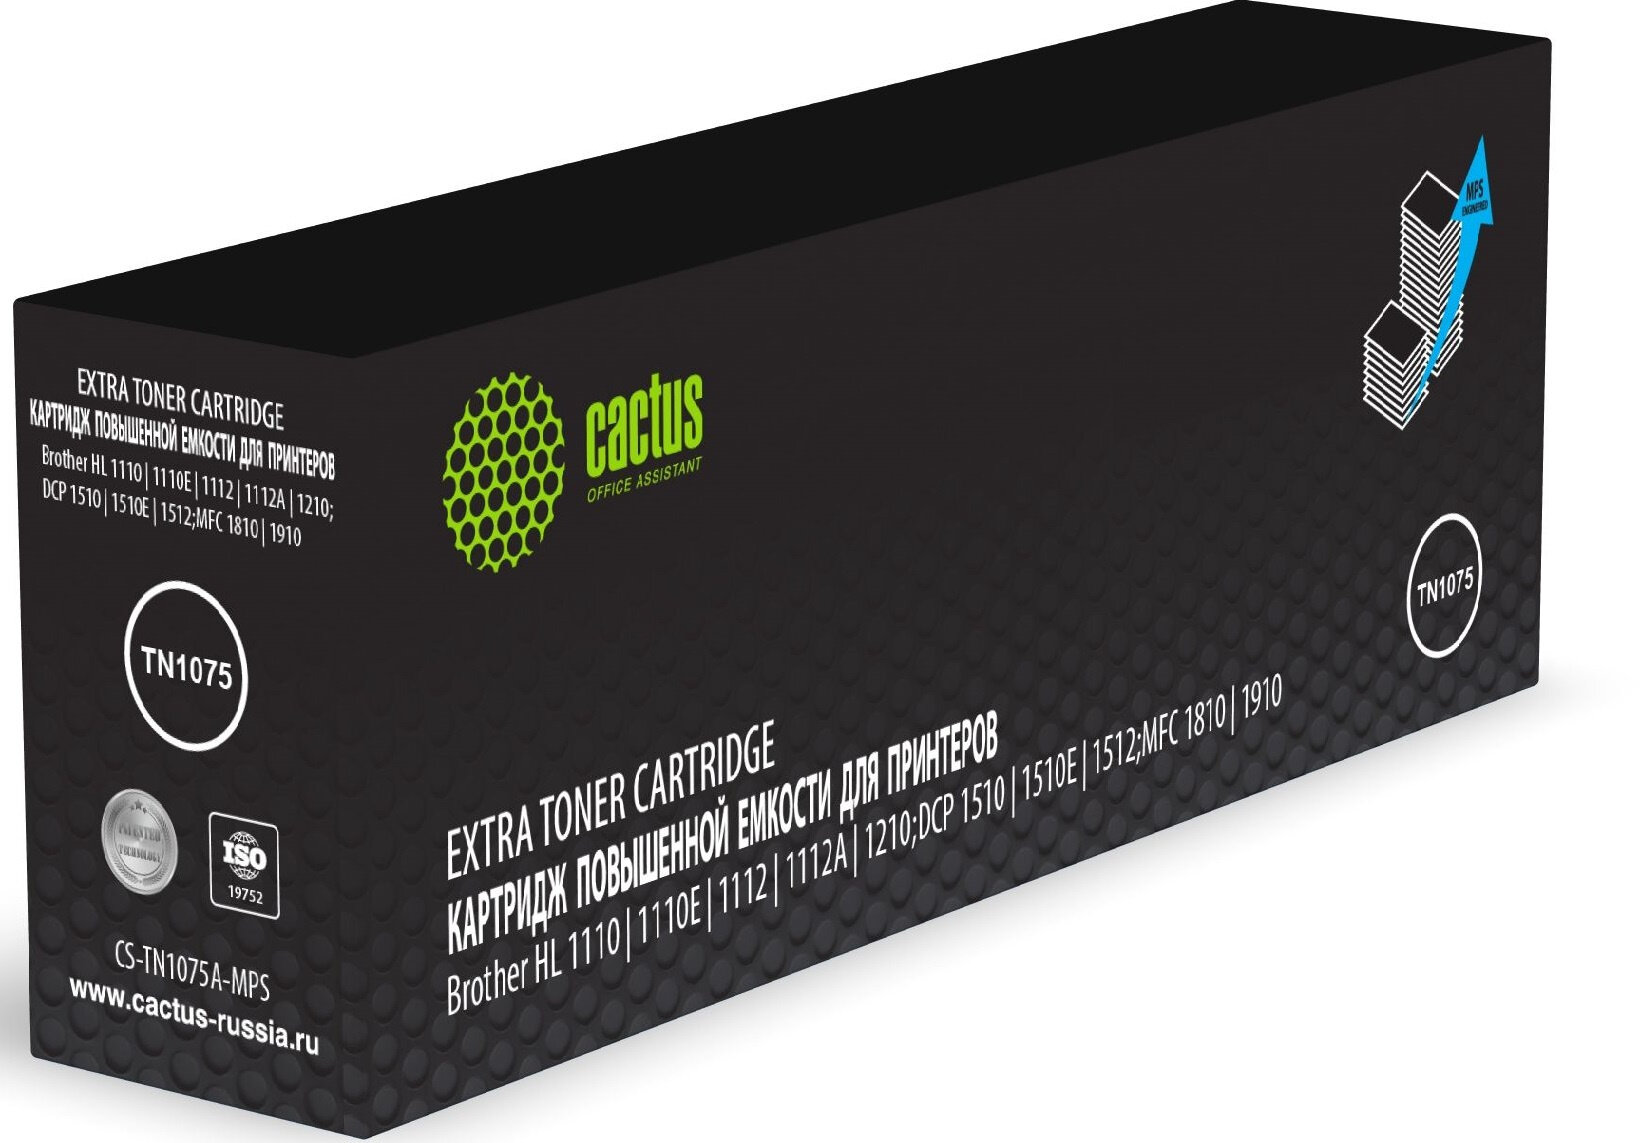 Картридж лазерный Cactus CS-TN1075A-MPS черный 2000стр. для Brother HL-111011121510151218101815